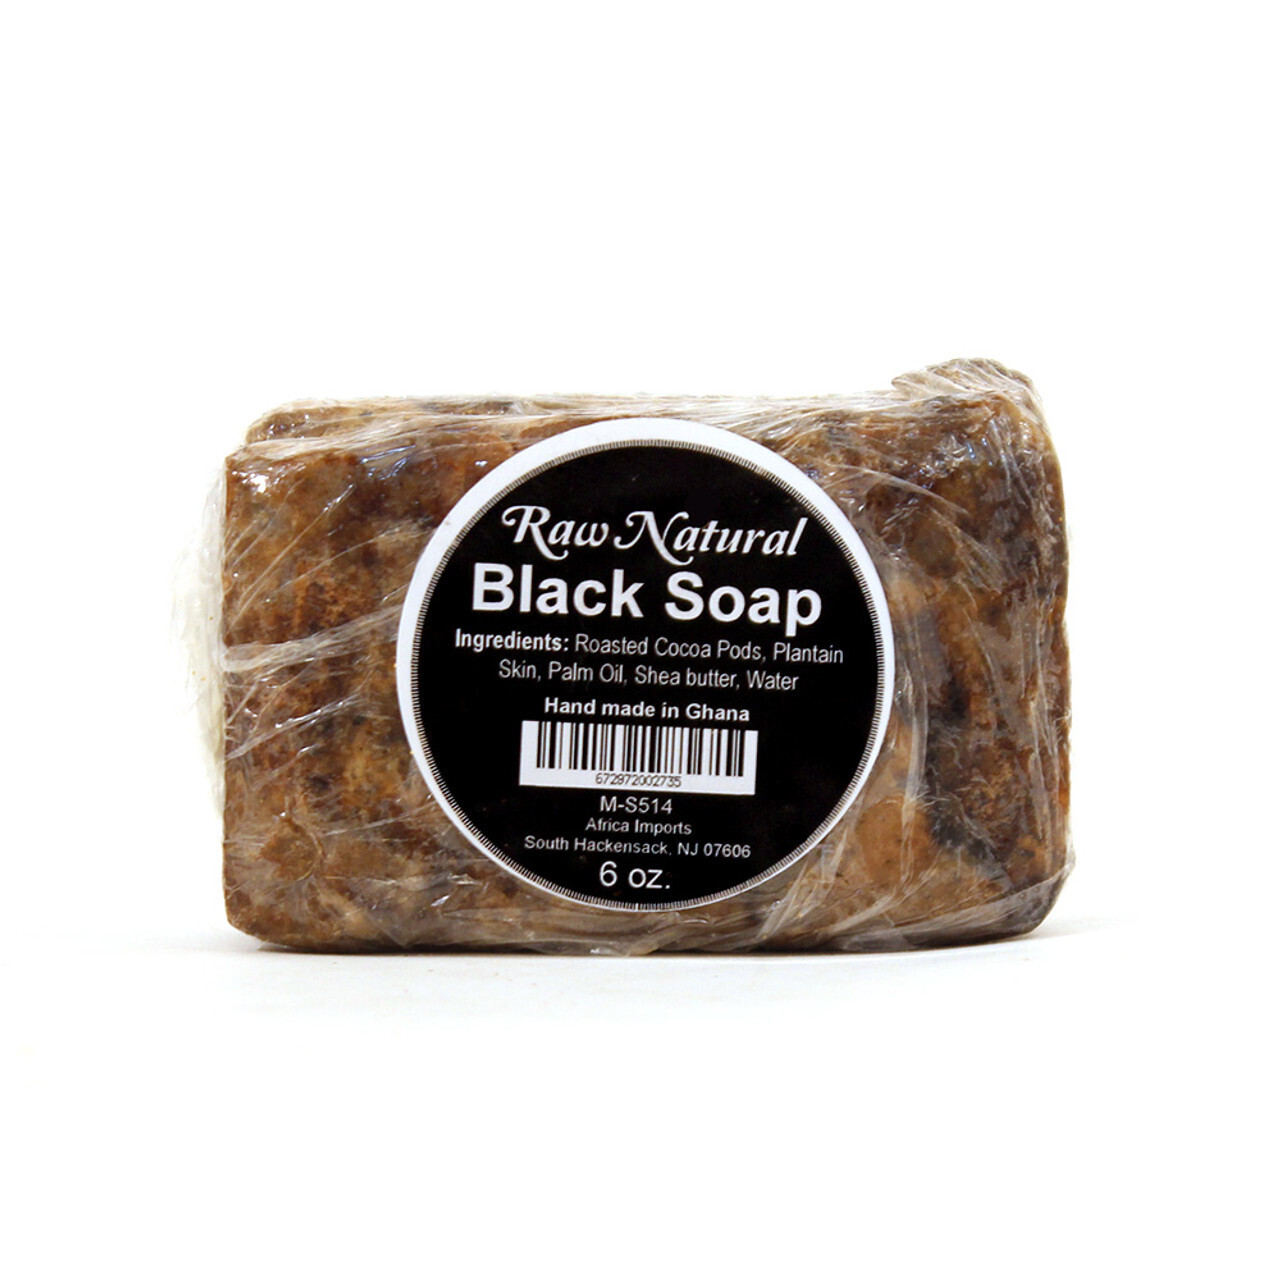 Raw Natural Black Soap Bar - 6 oz.